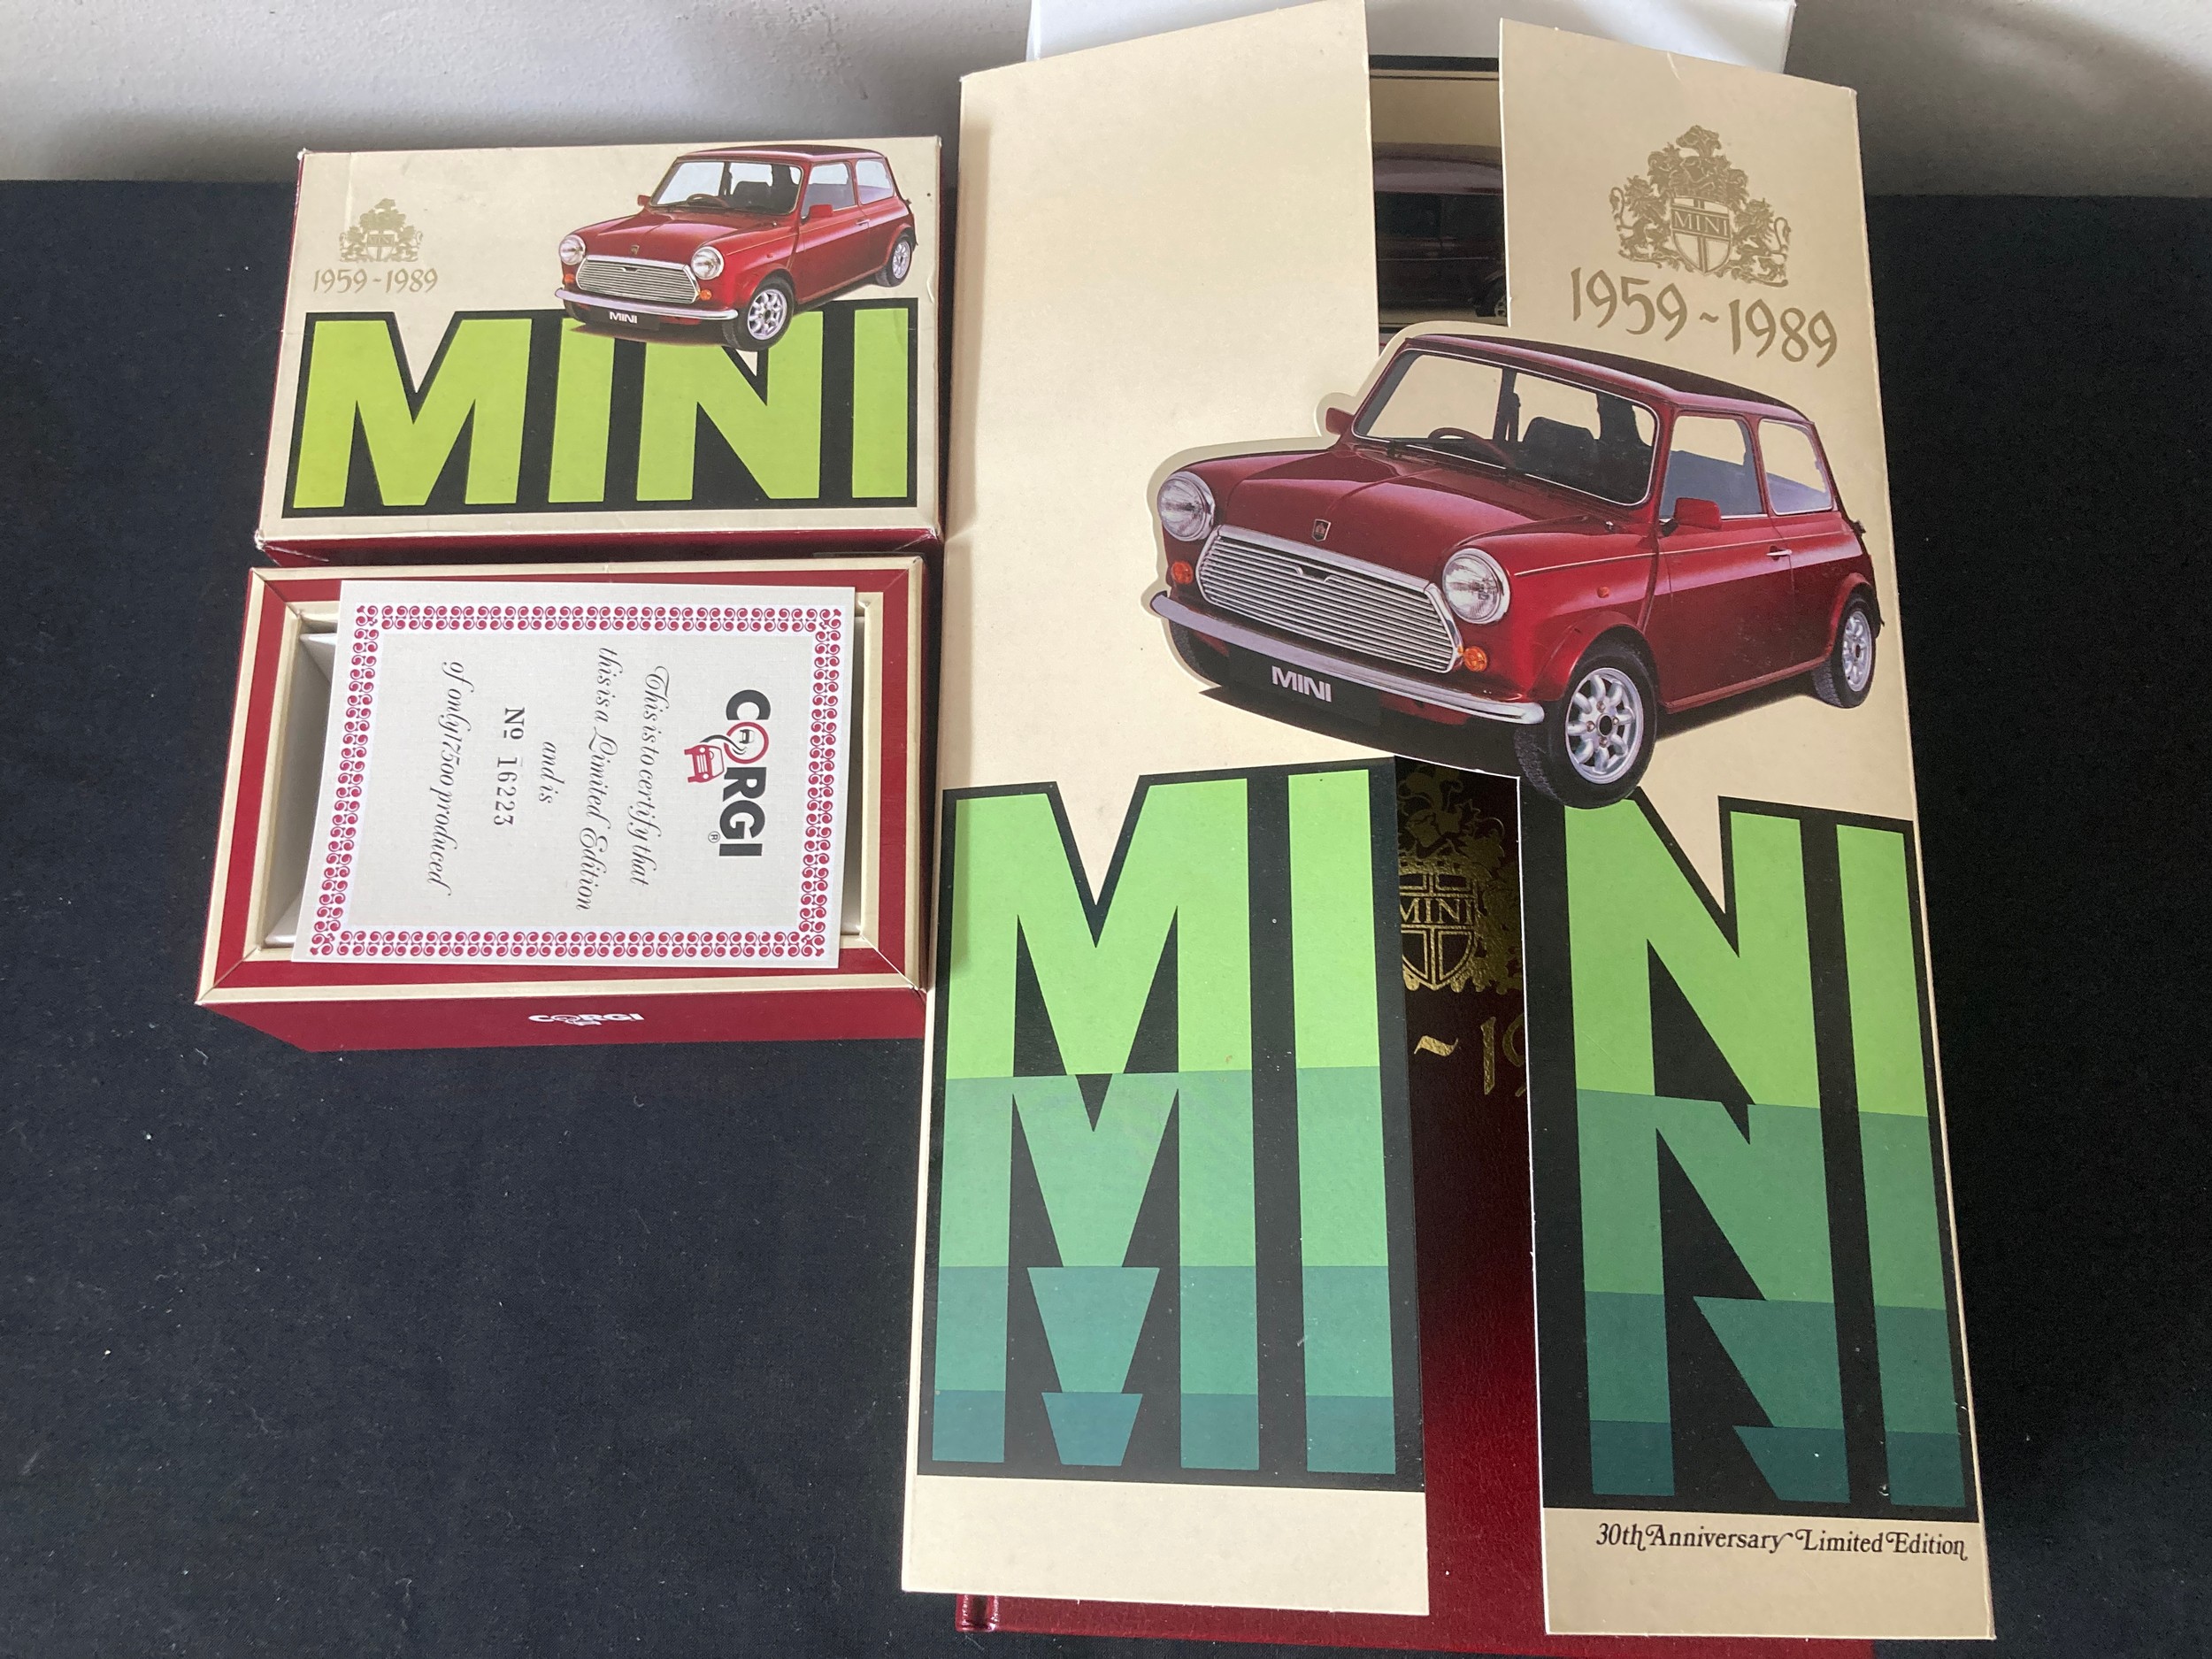 A Corgi Mini Limited Edition model together with a 30th Anniversary 1959-1989 Limited Edition Mini - Image 2 of 2